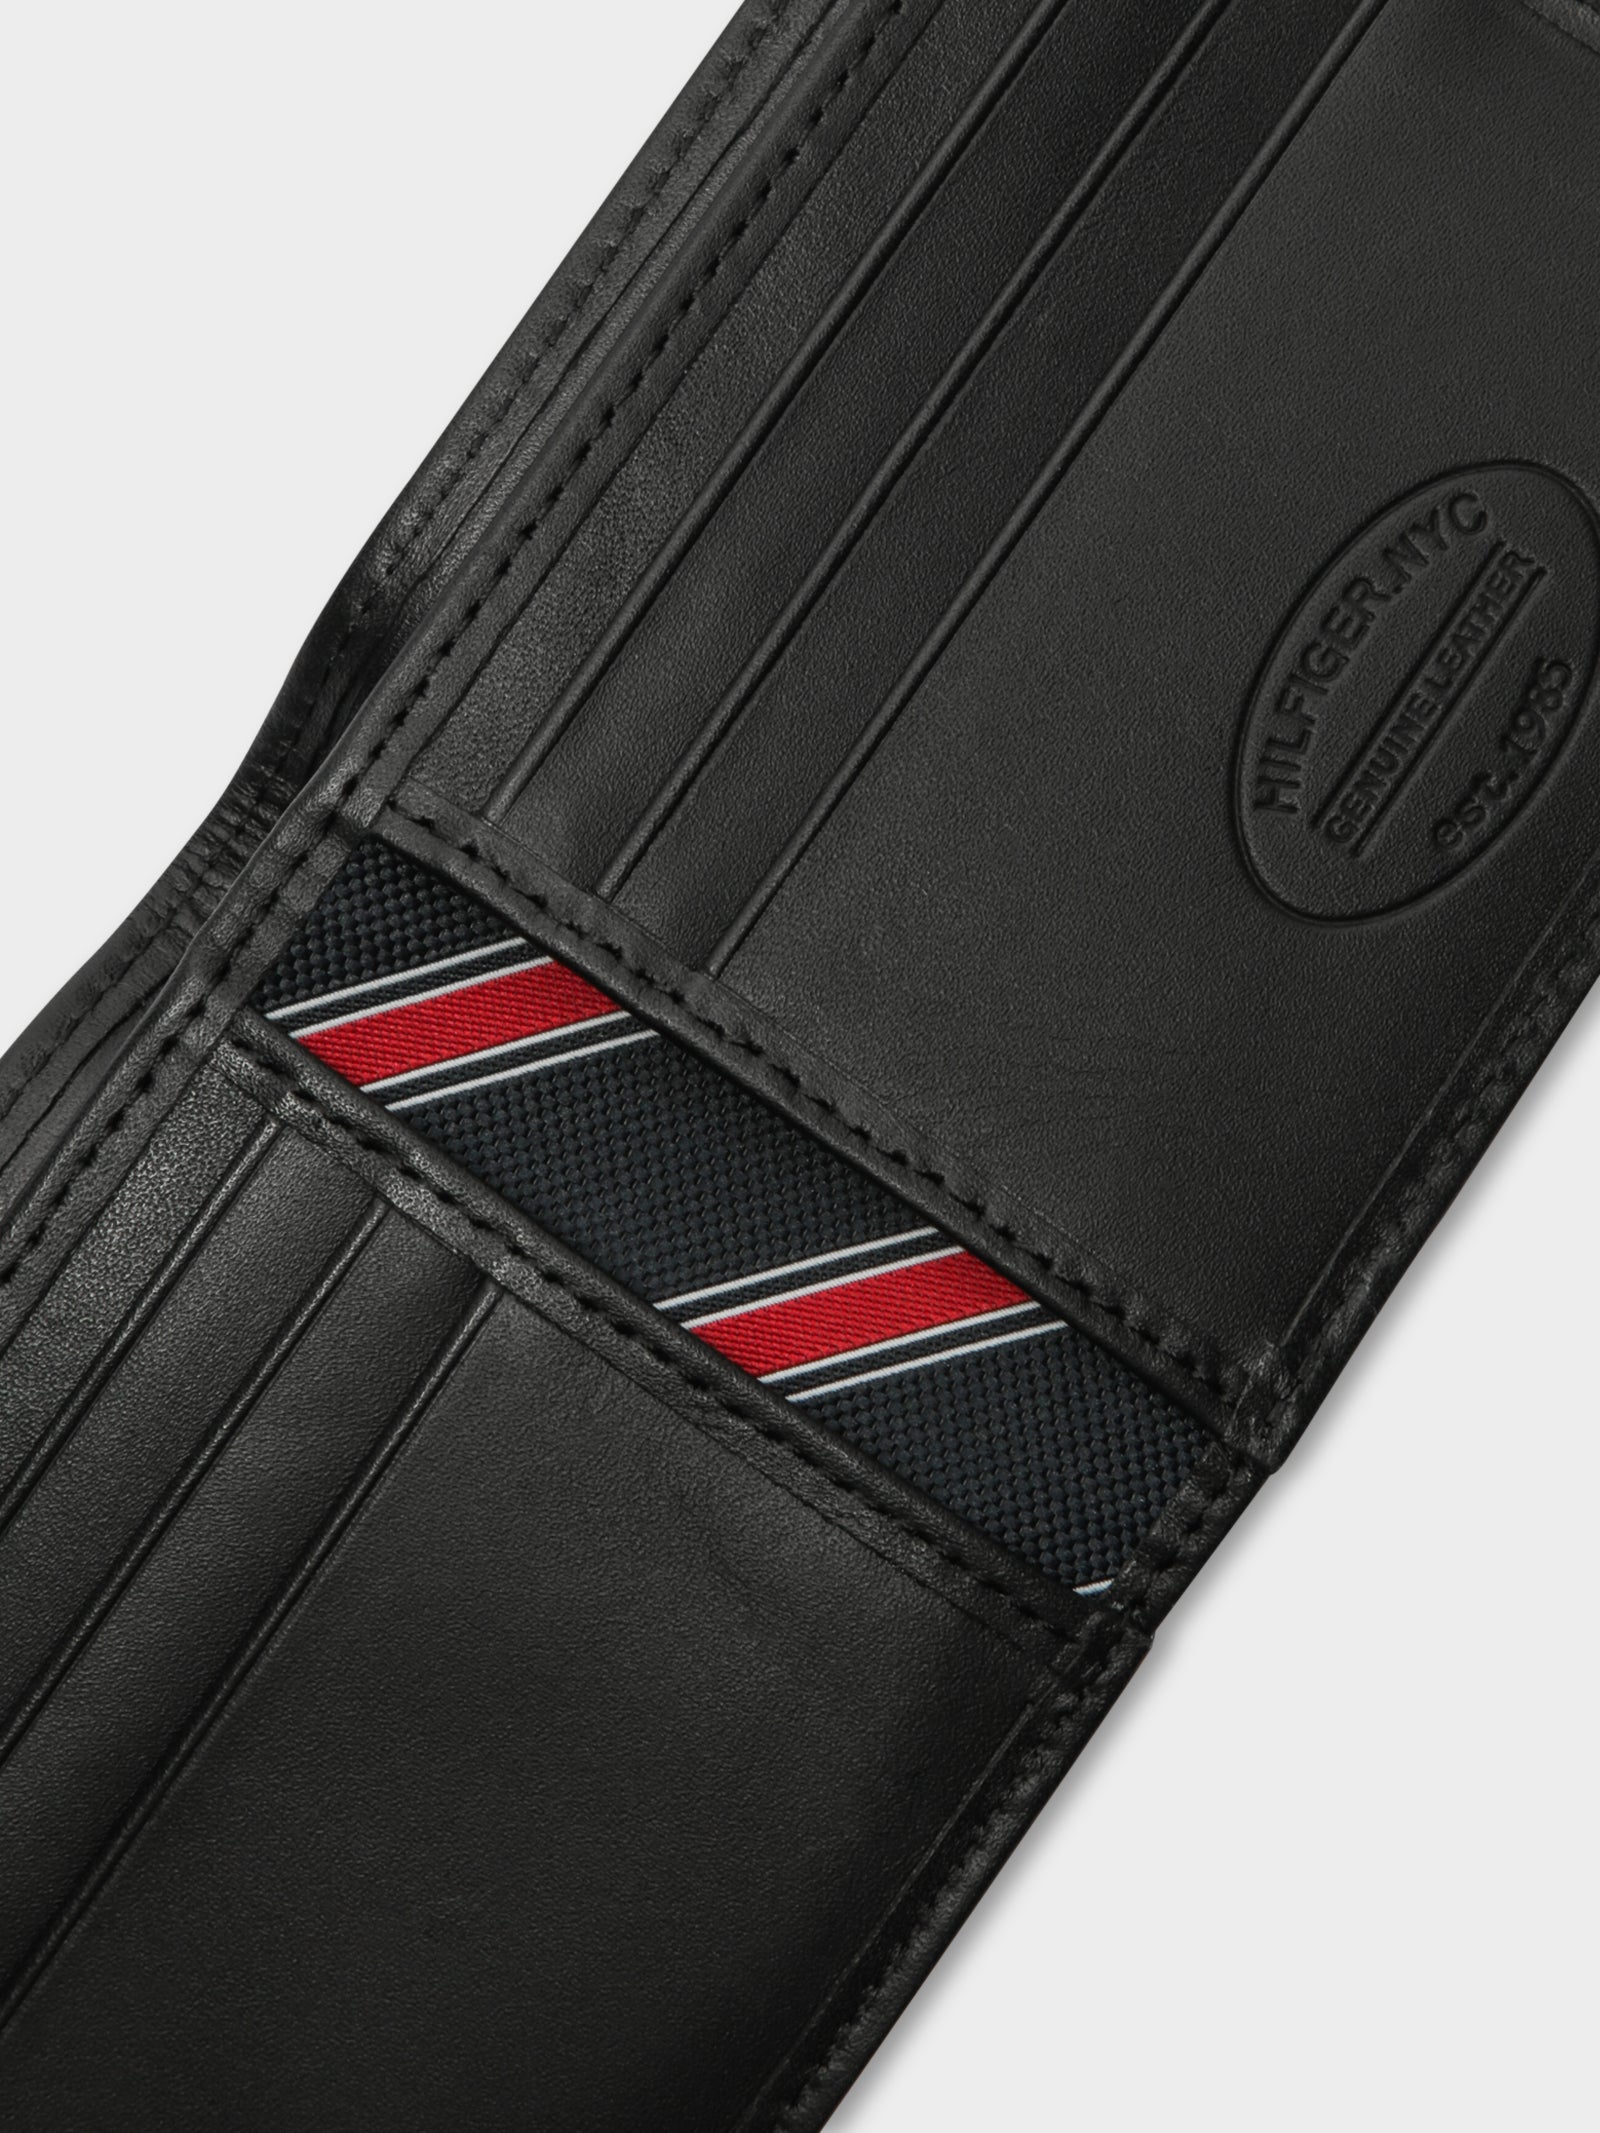 Eaton Bi-Fold Wallet in Black Leather